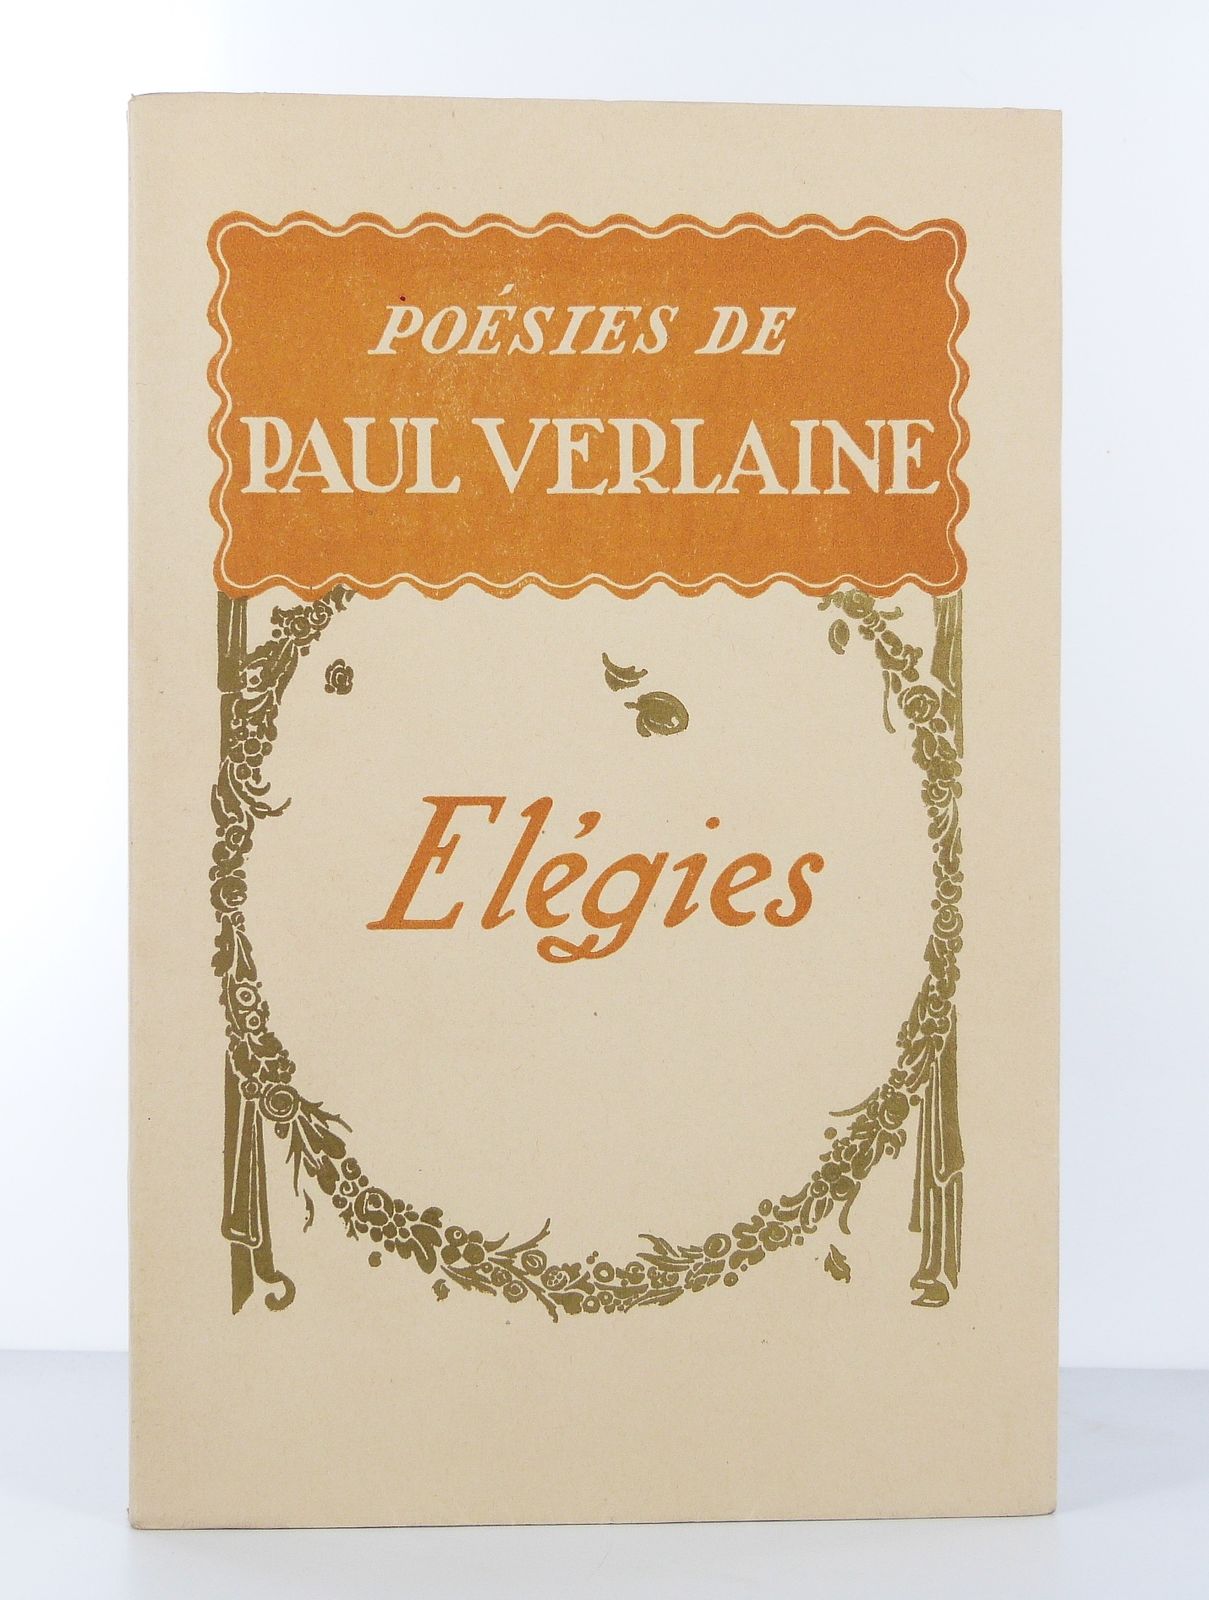 Poésies de Paul Verlaine. Elégies